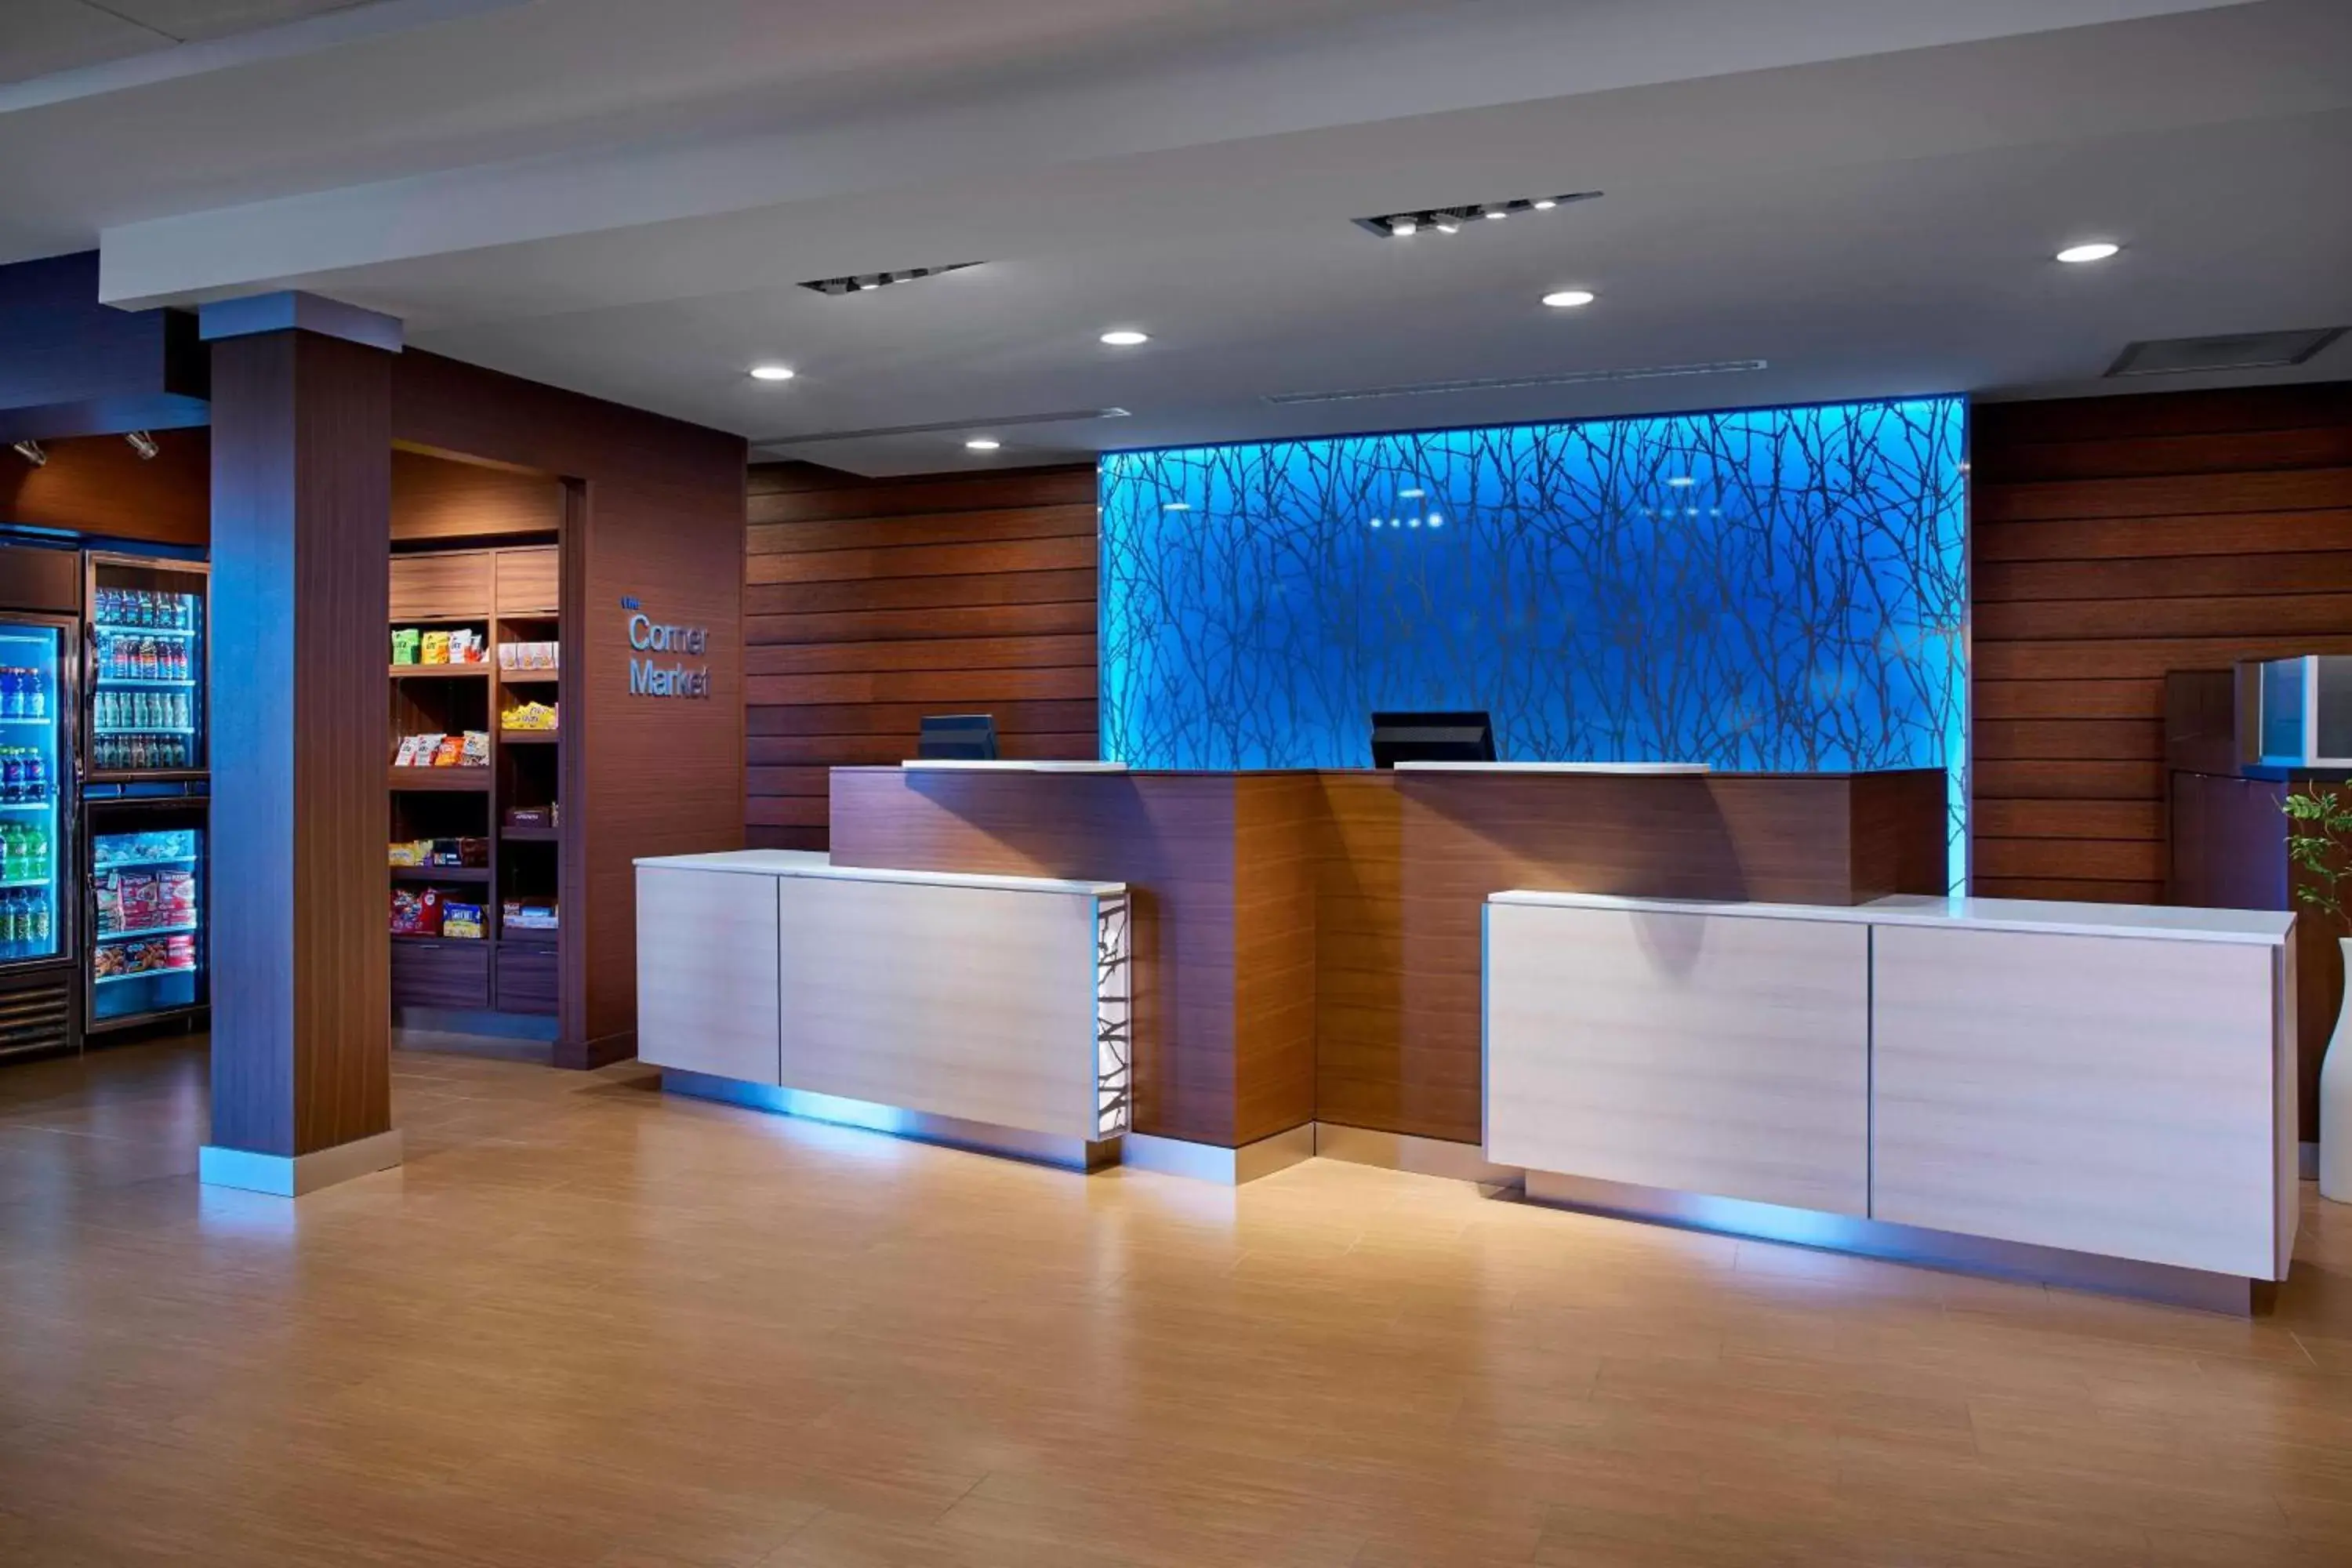 Lobby or reception, Lobby/Reception in Fairfield Inn & Suites by Marriott Alexandria,Virginia